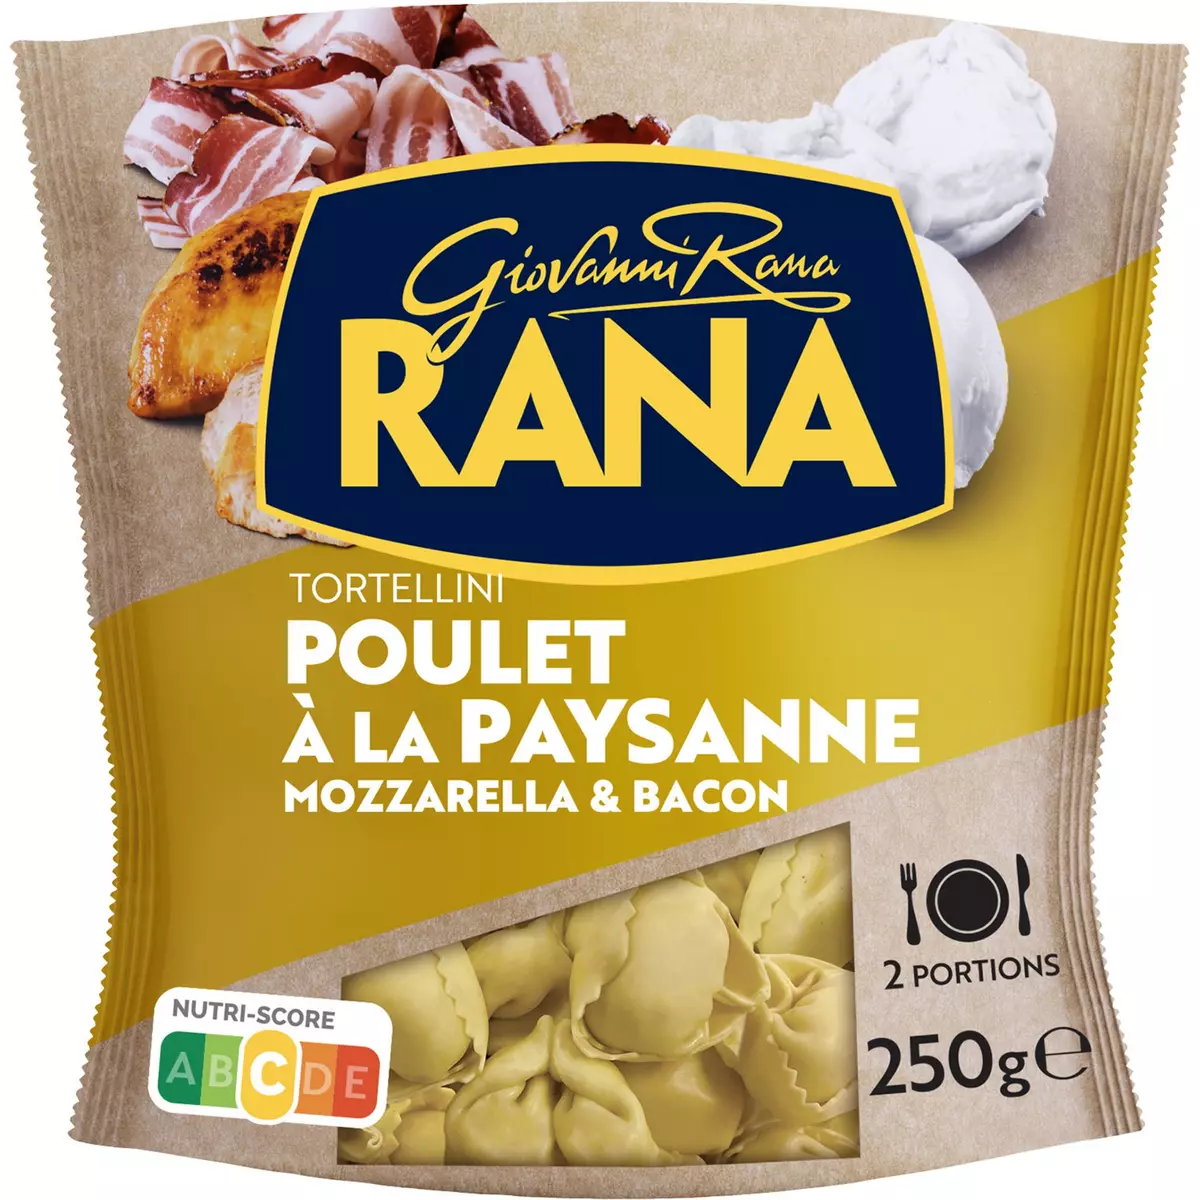 RANA Tortellini poulet à la paysanne, mozzarella & bacon 2 portions 250g